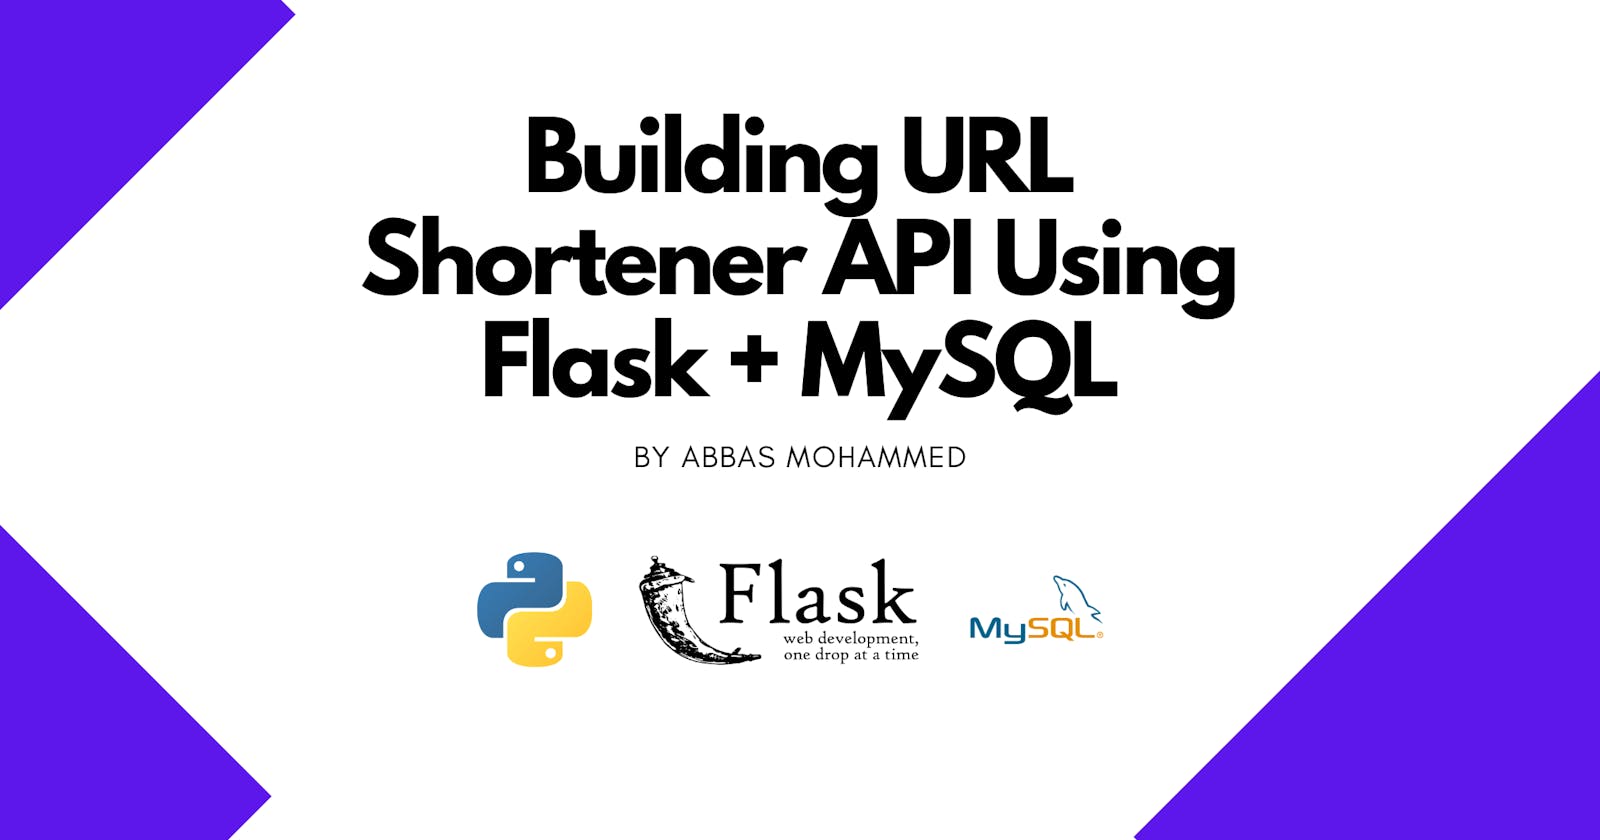 Building URL Shortener API Using Flask + MySQL